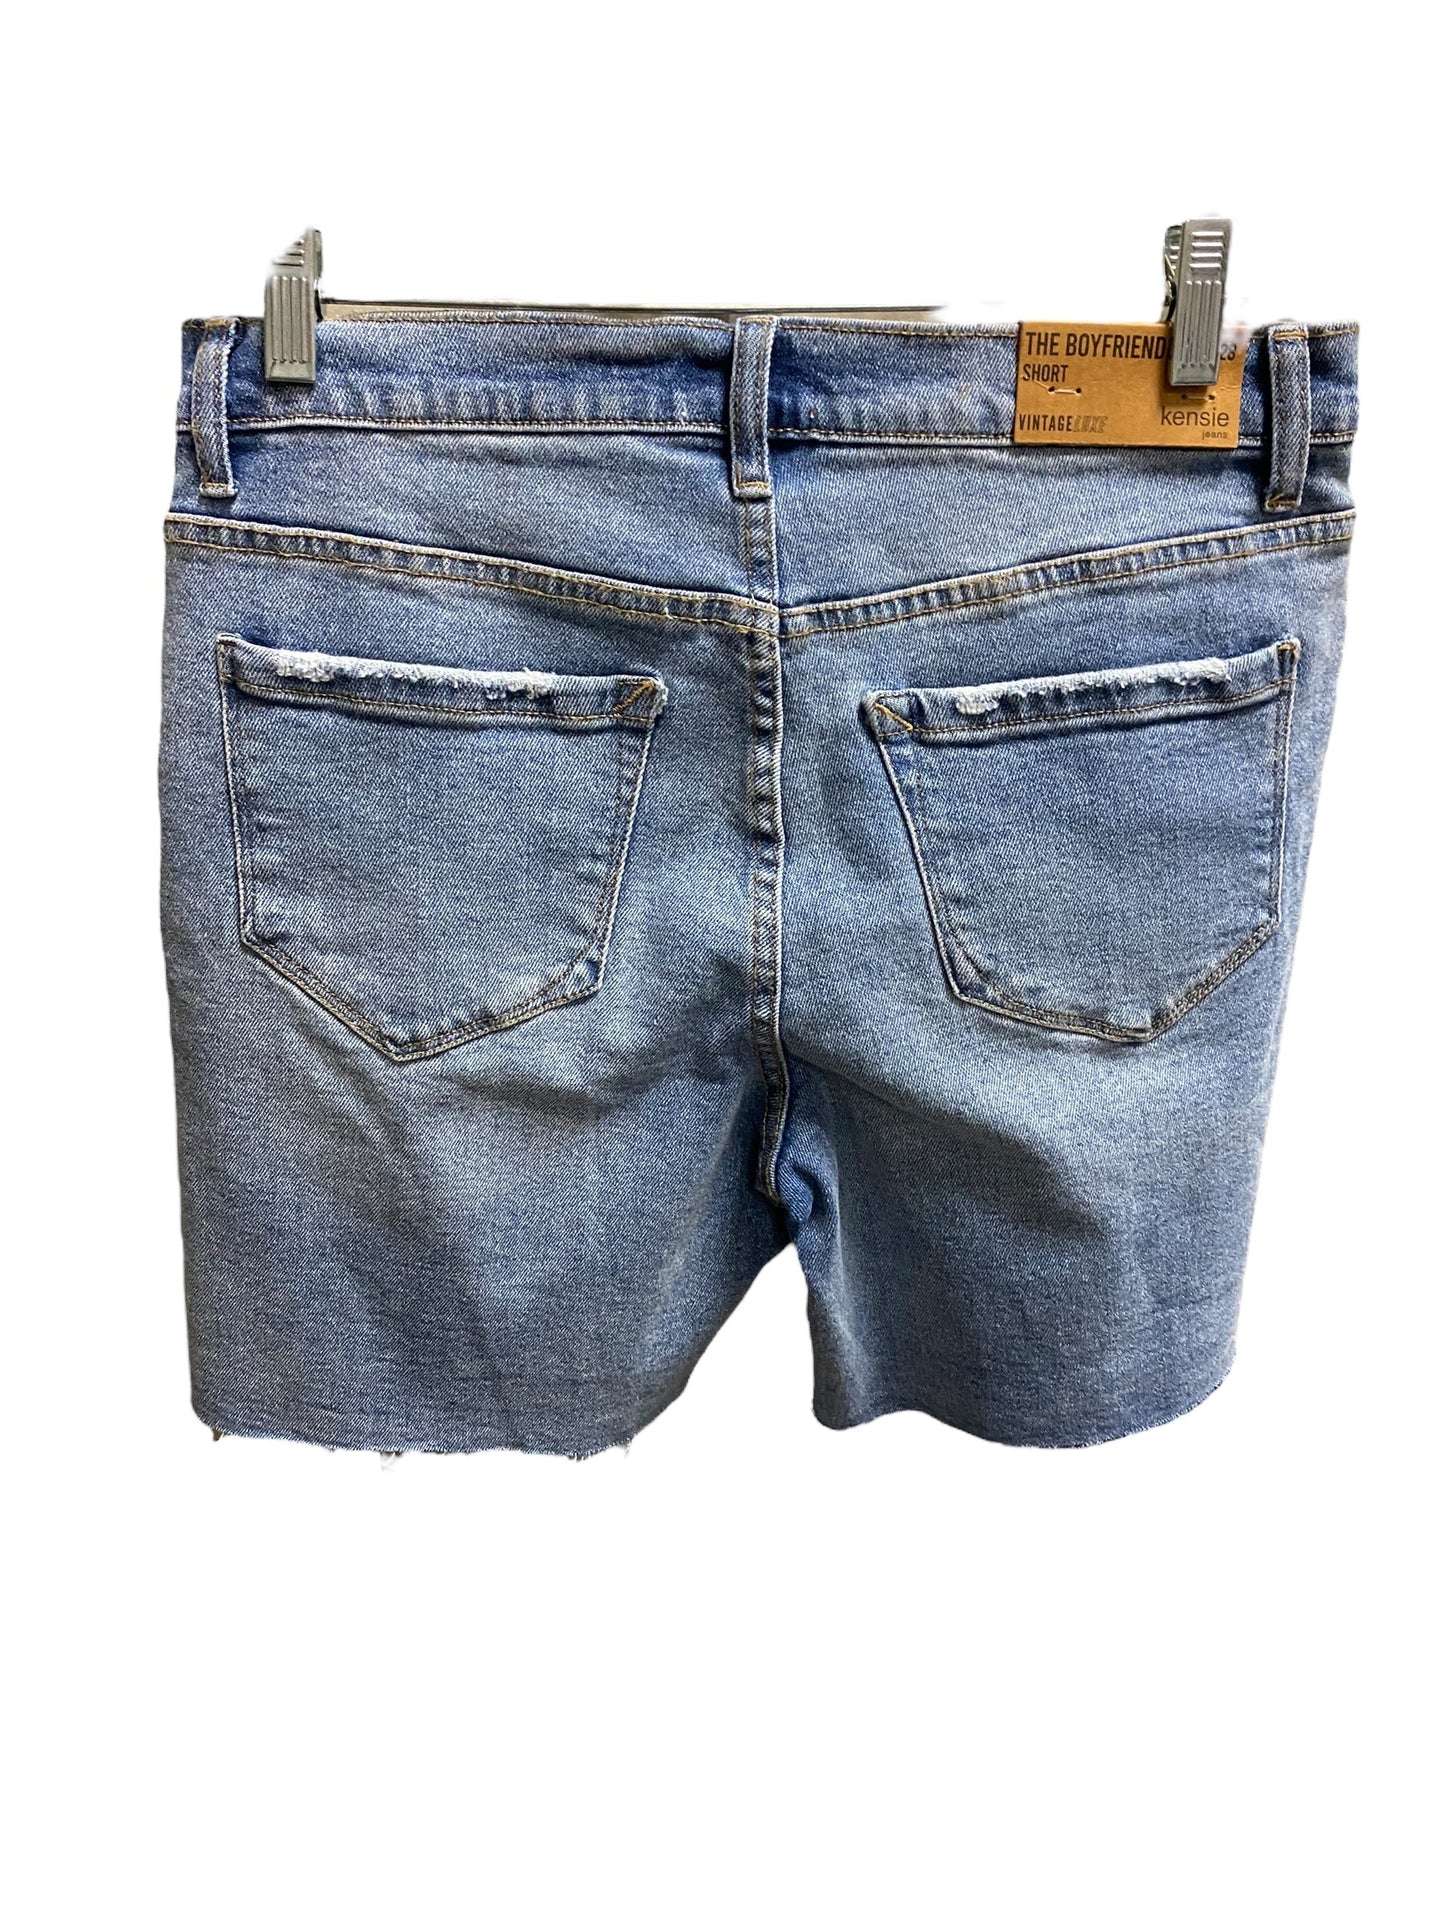 Blue Denim Shorts Kensie, Size 6